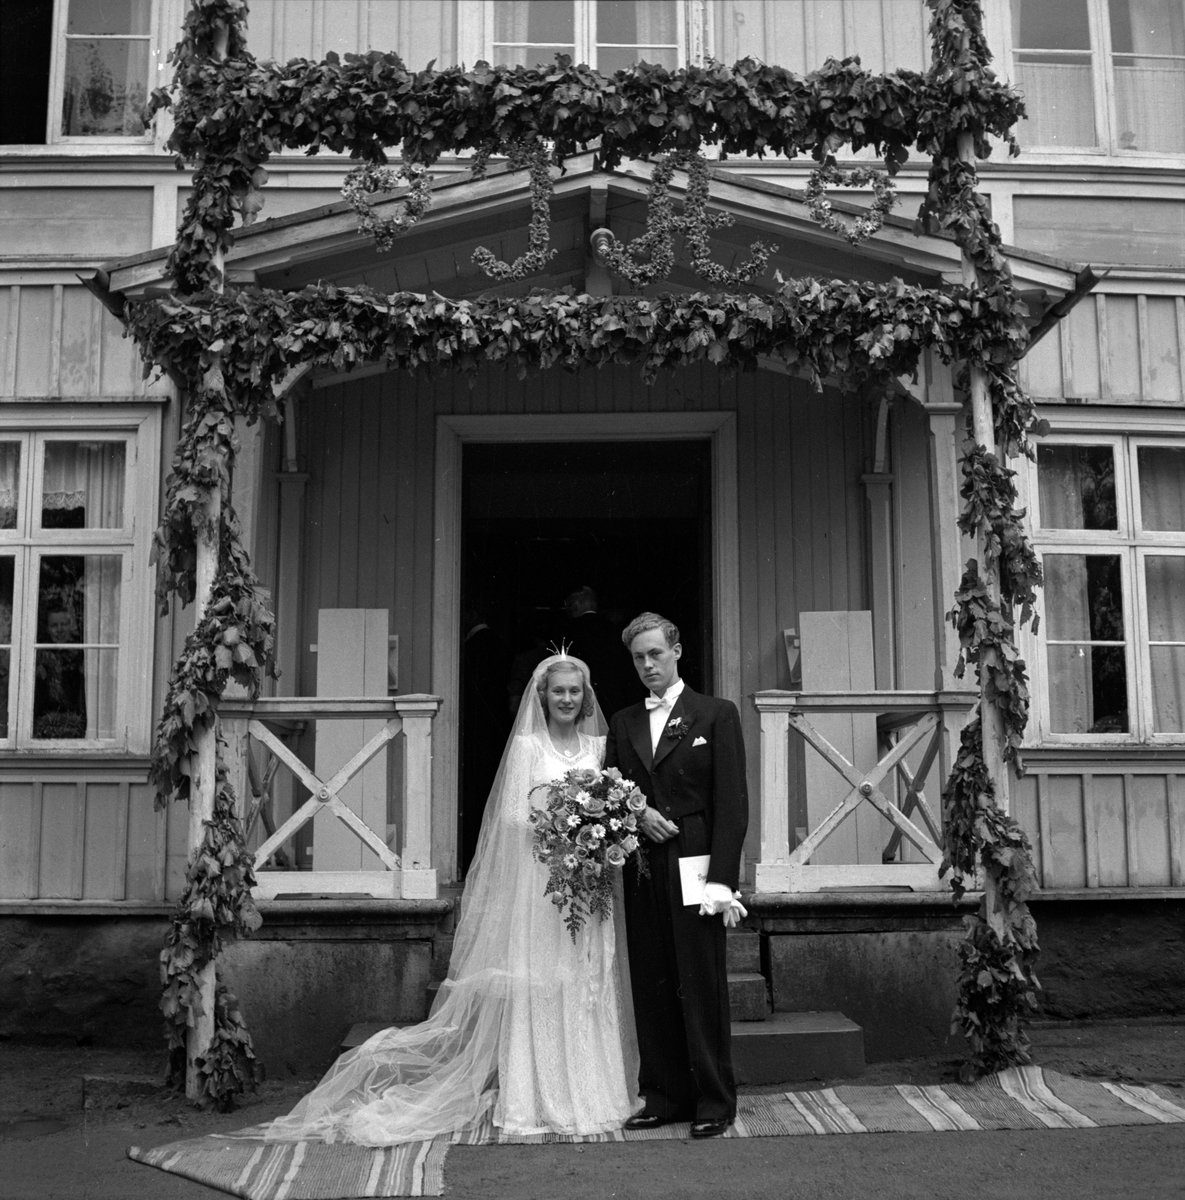 Bröllop på Granbäcks gård mellan Ingrid Qvänstedt och Arne Dalefält i juni 1948. Hon i lång spetsklänning med rosor och prästkragar i buketten. De står under äreporten av gröna bladgirlander med initialerna I och H.